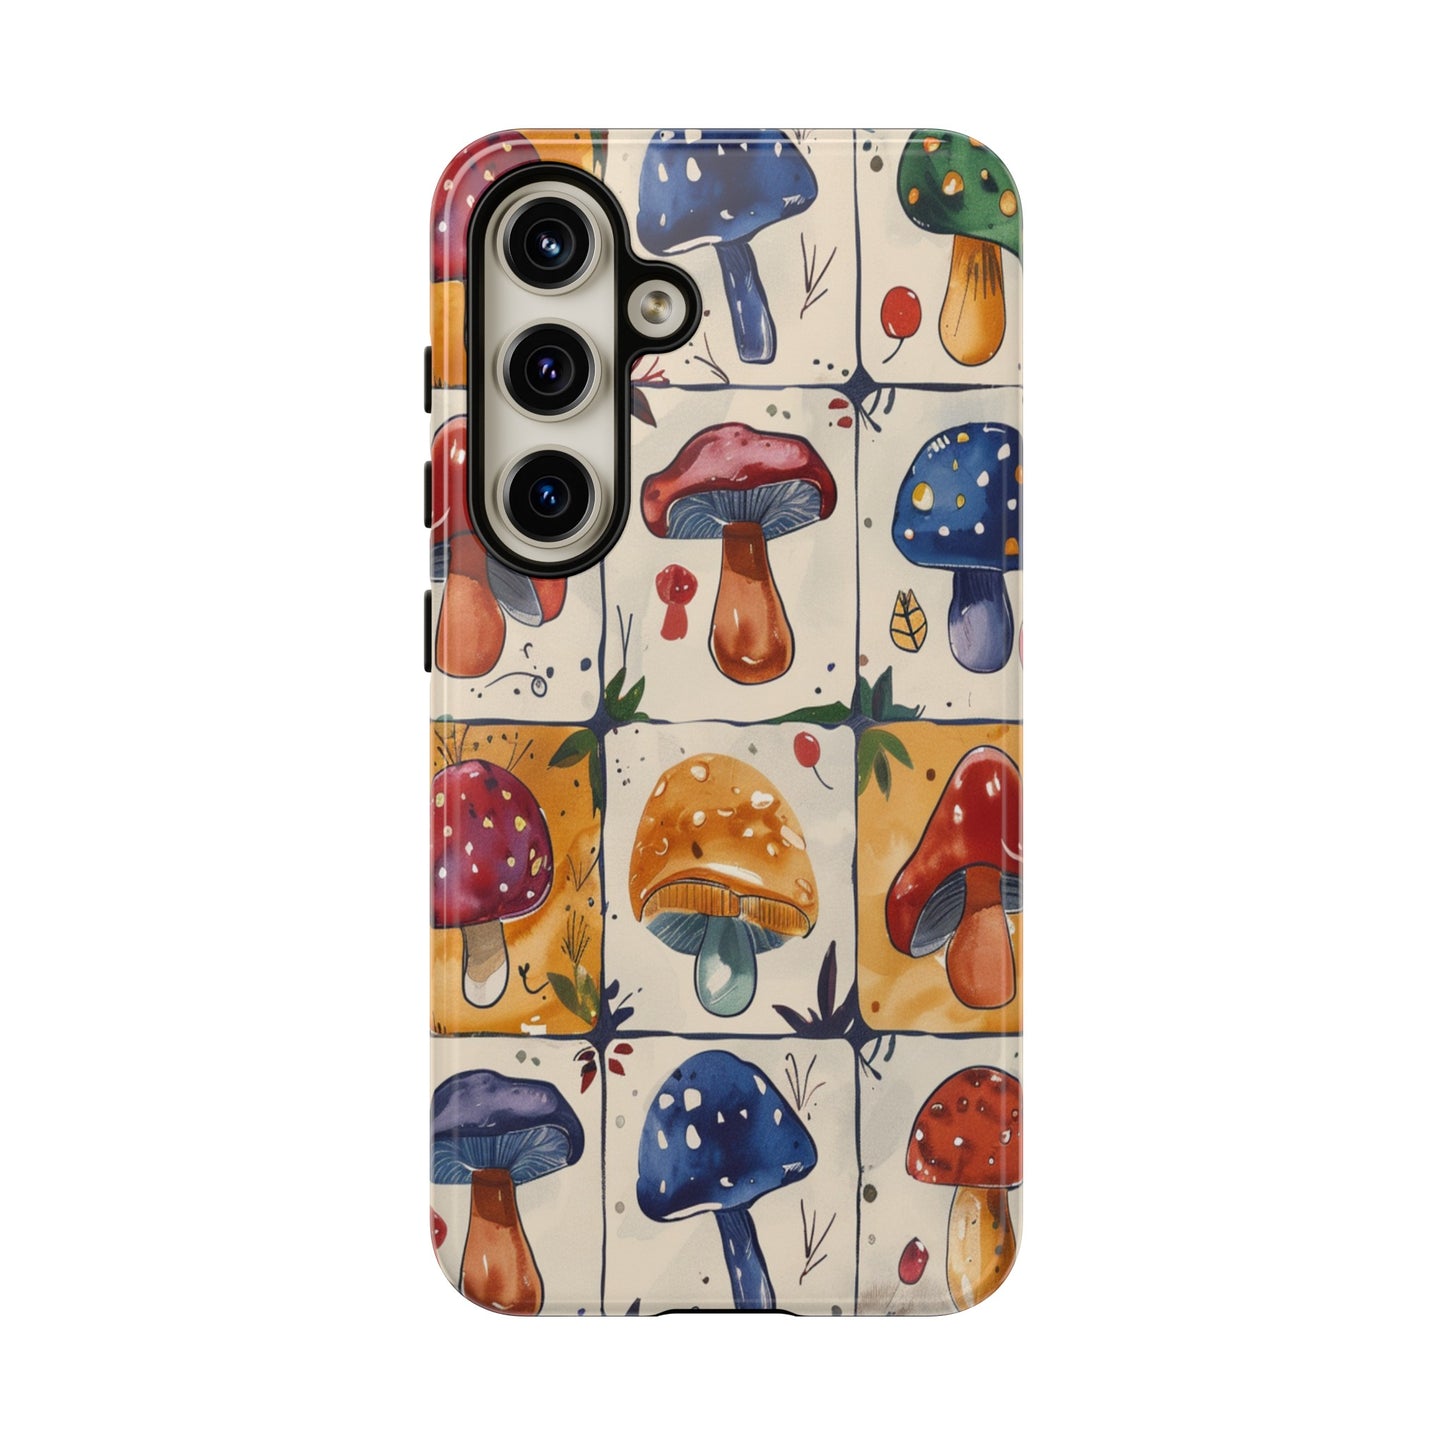 Cute mushroom iPhone case